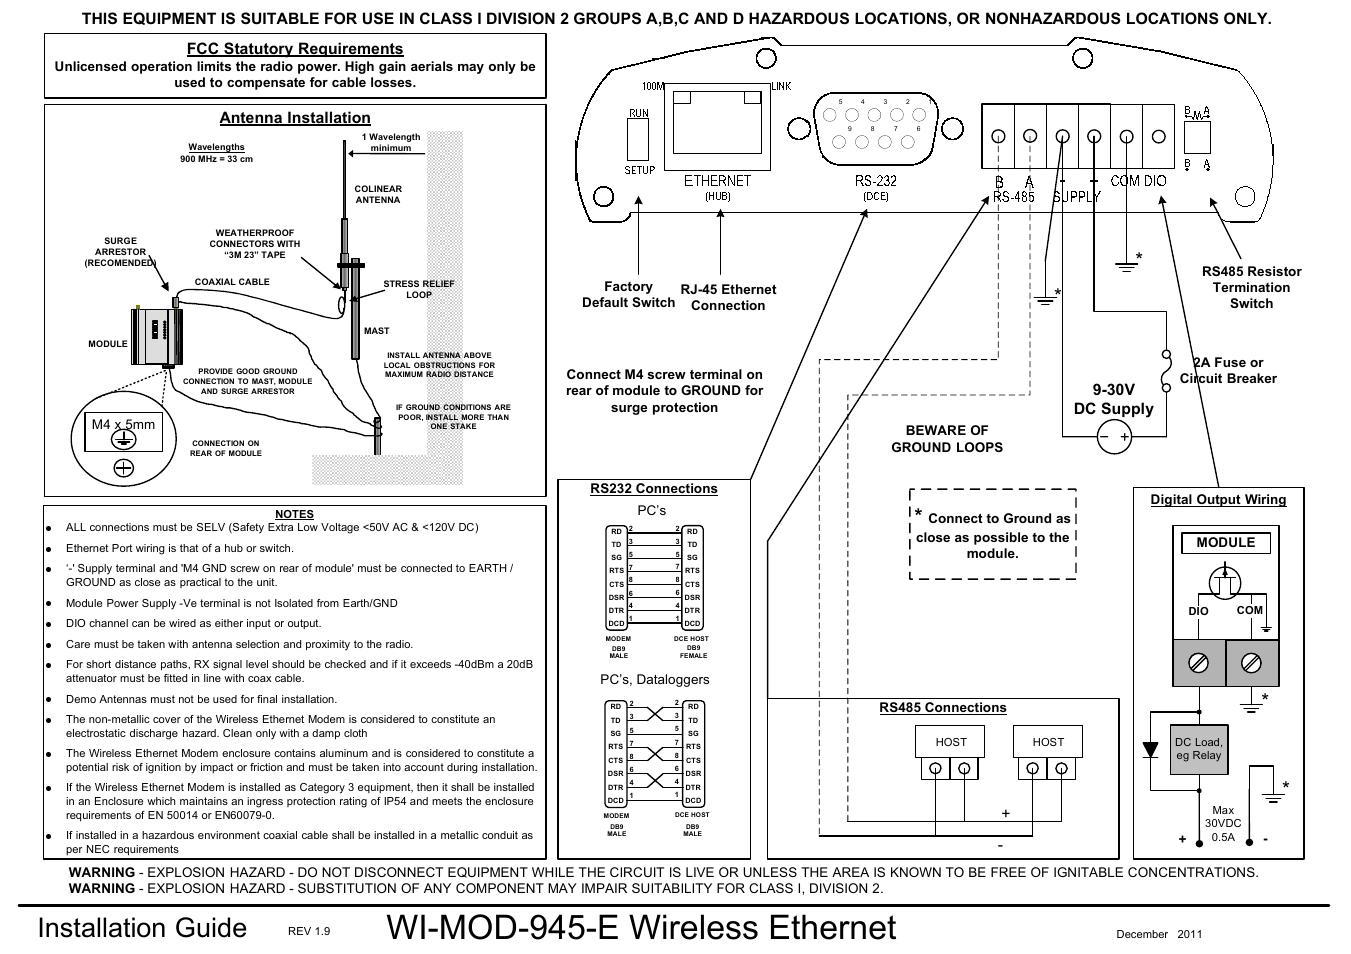 WI-MOD-945-E: 900Mhz Wireless Ethernet & Device Server v1.9